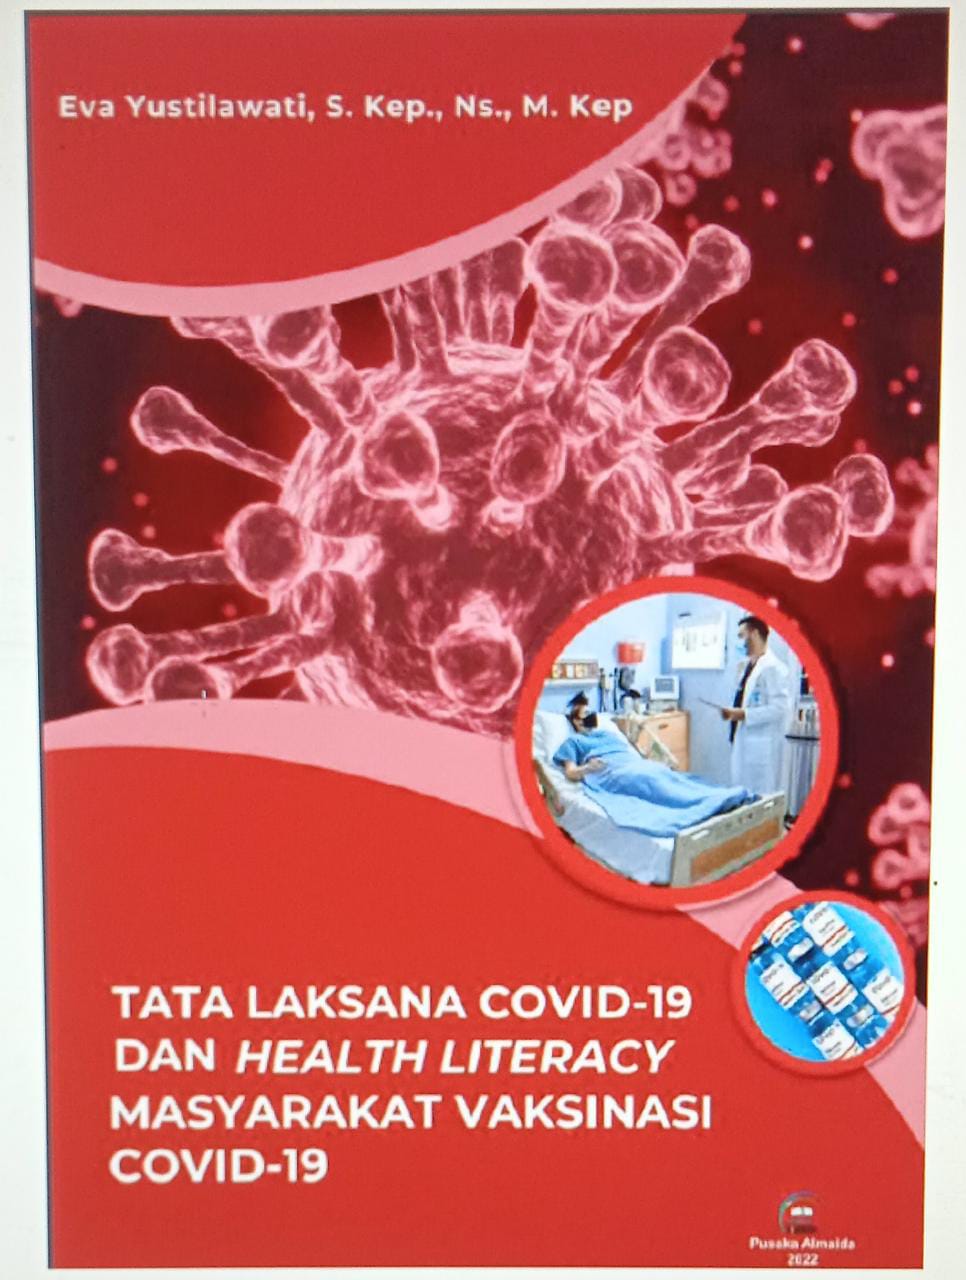 Tata Laksana Covid-19 dan Health Literacy Masyarakat Vaksinasi Covid-19